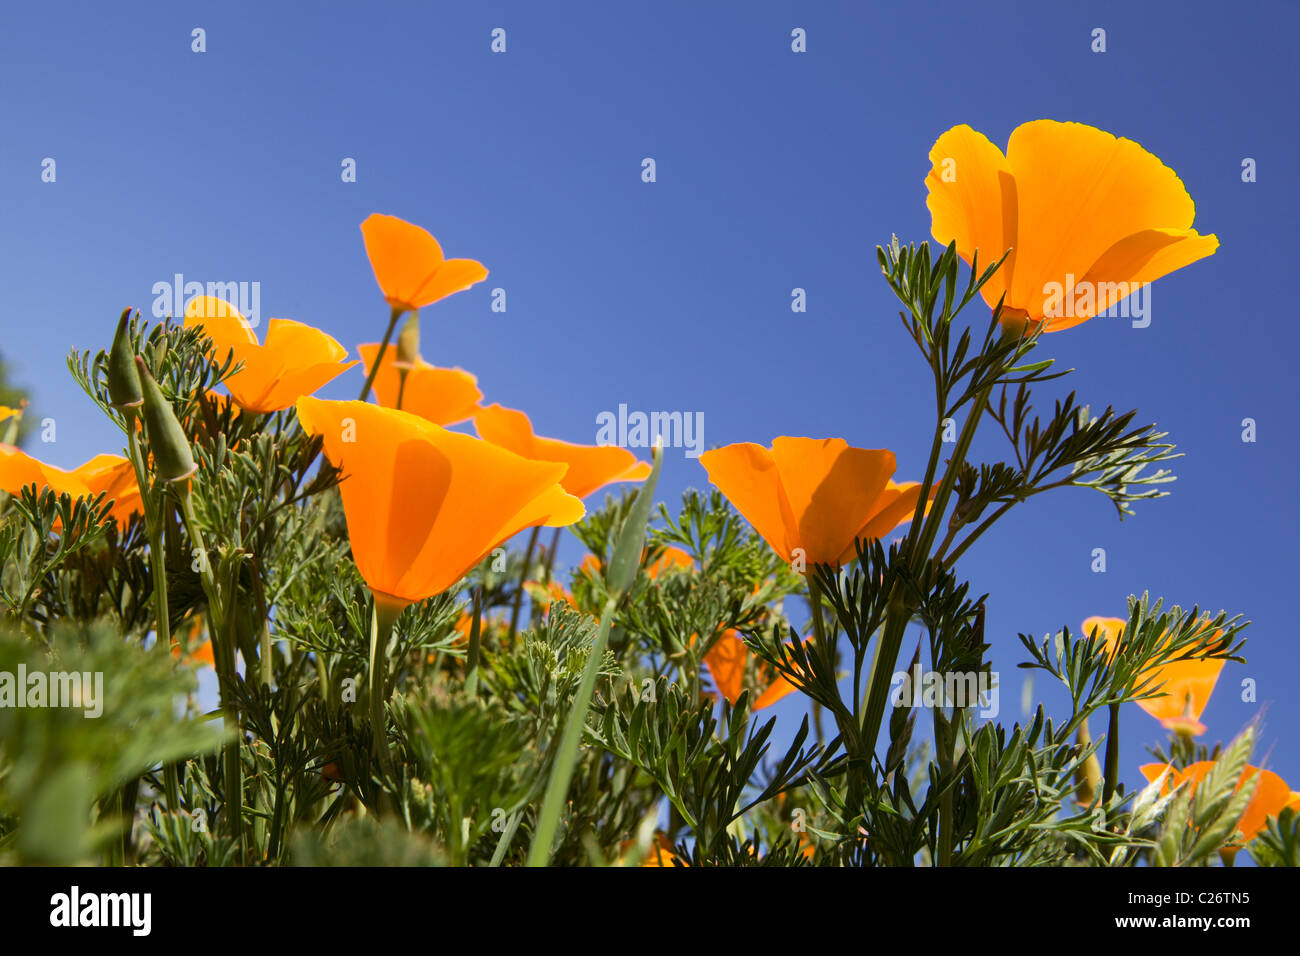 Ein Feld von California Poppies - Point Buchon State Marine Reserve und Marine Conservation Area - Kalifornien Vereinigte Staaten Stockfoto